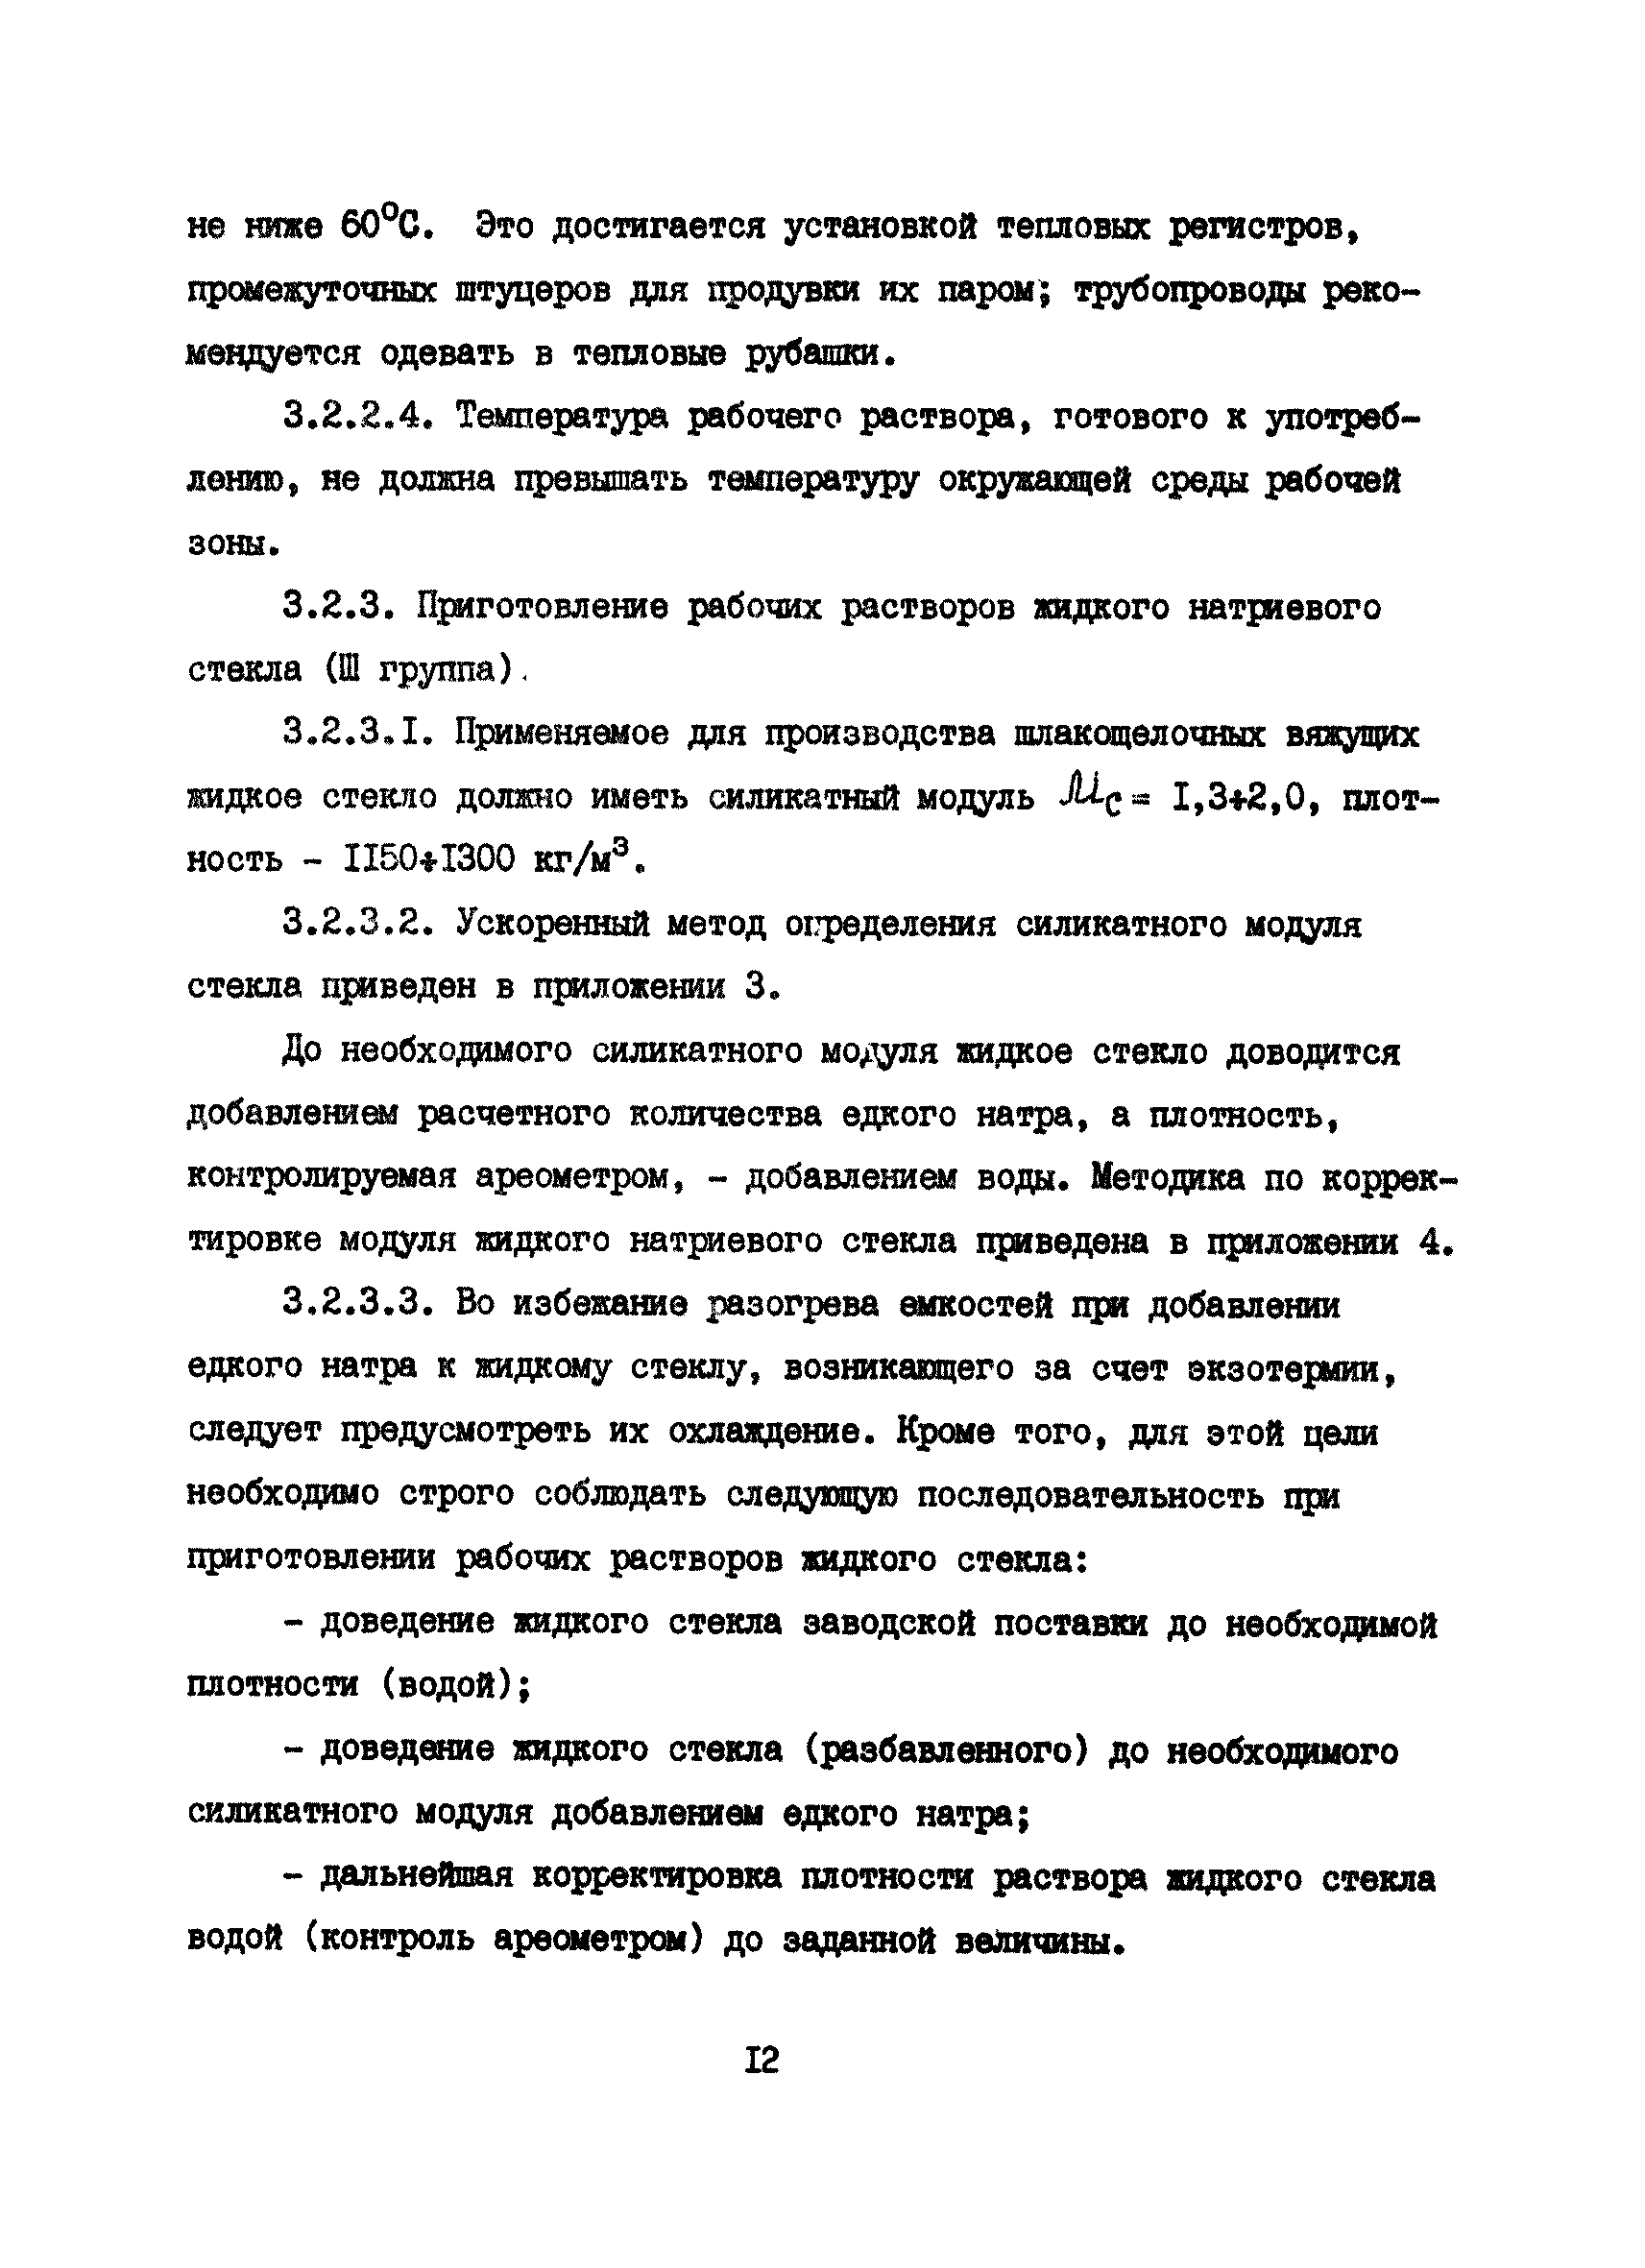 РД 12.18.077-88